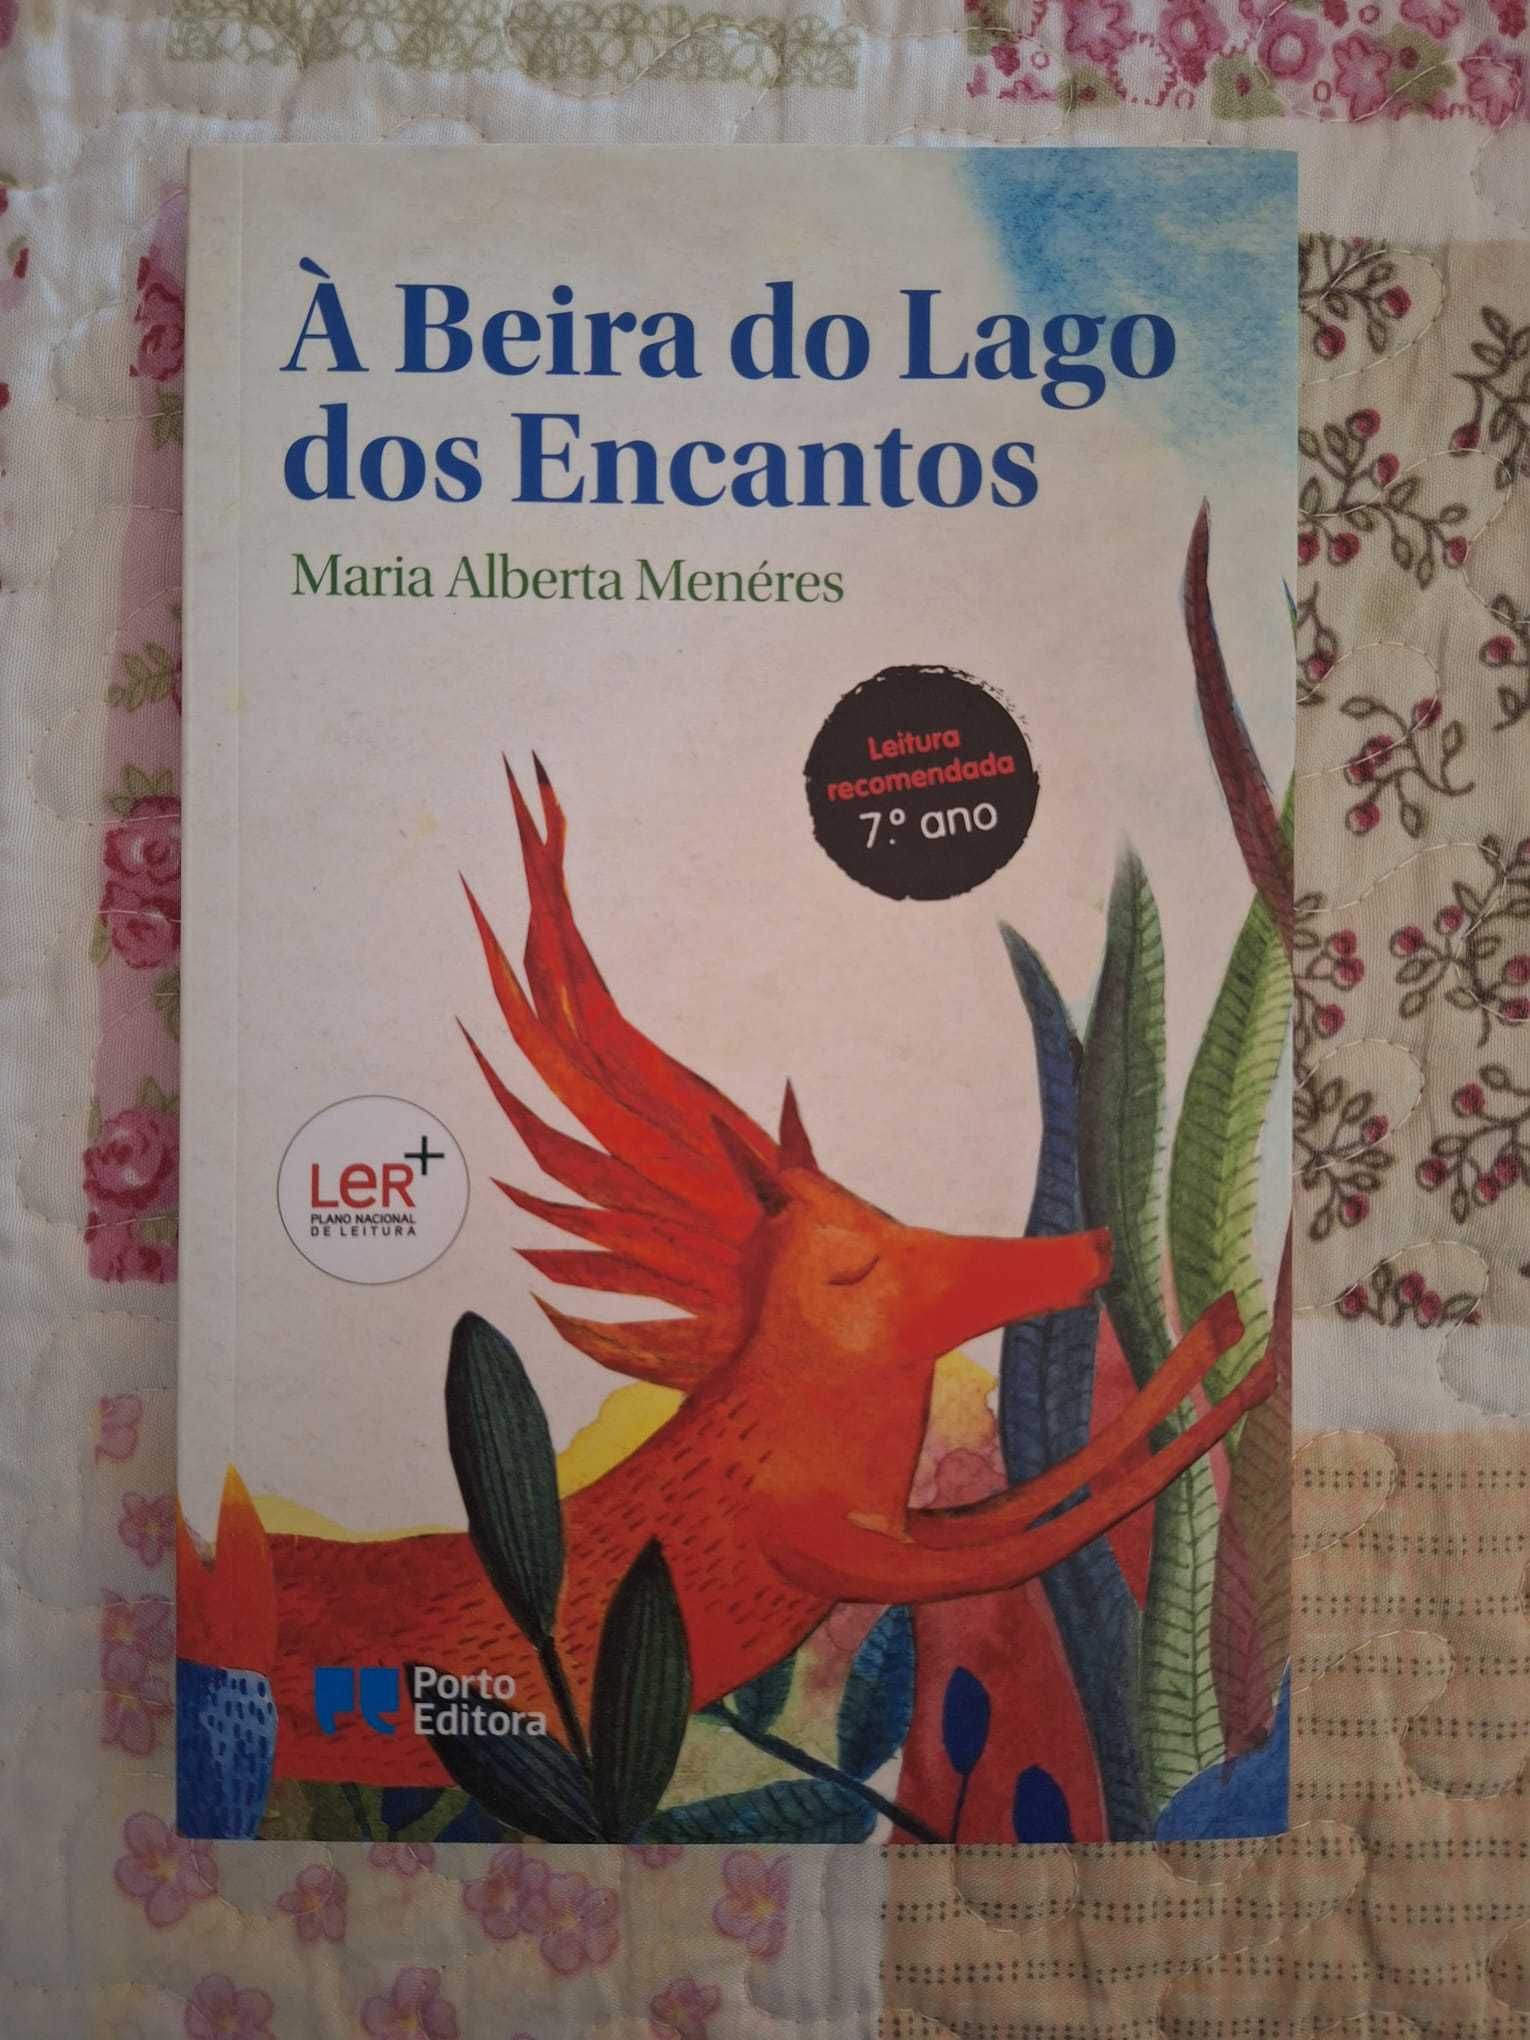 Livro " À Beira do Lago dos Encantos"